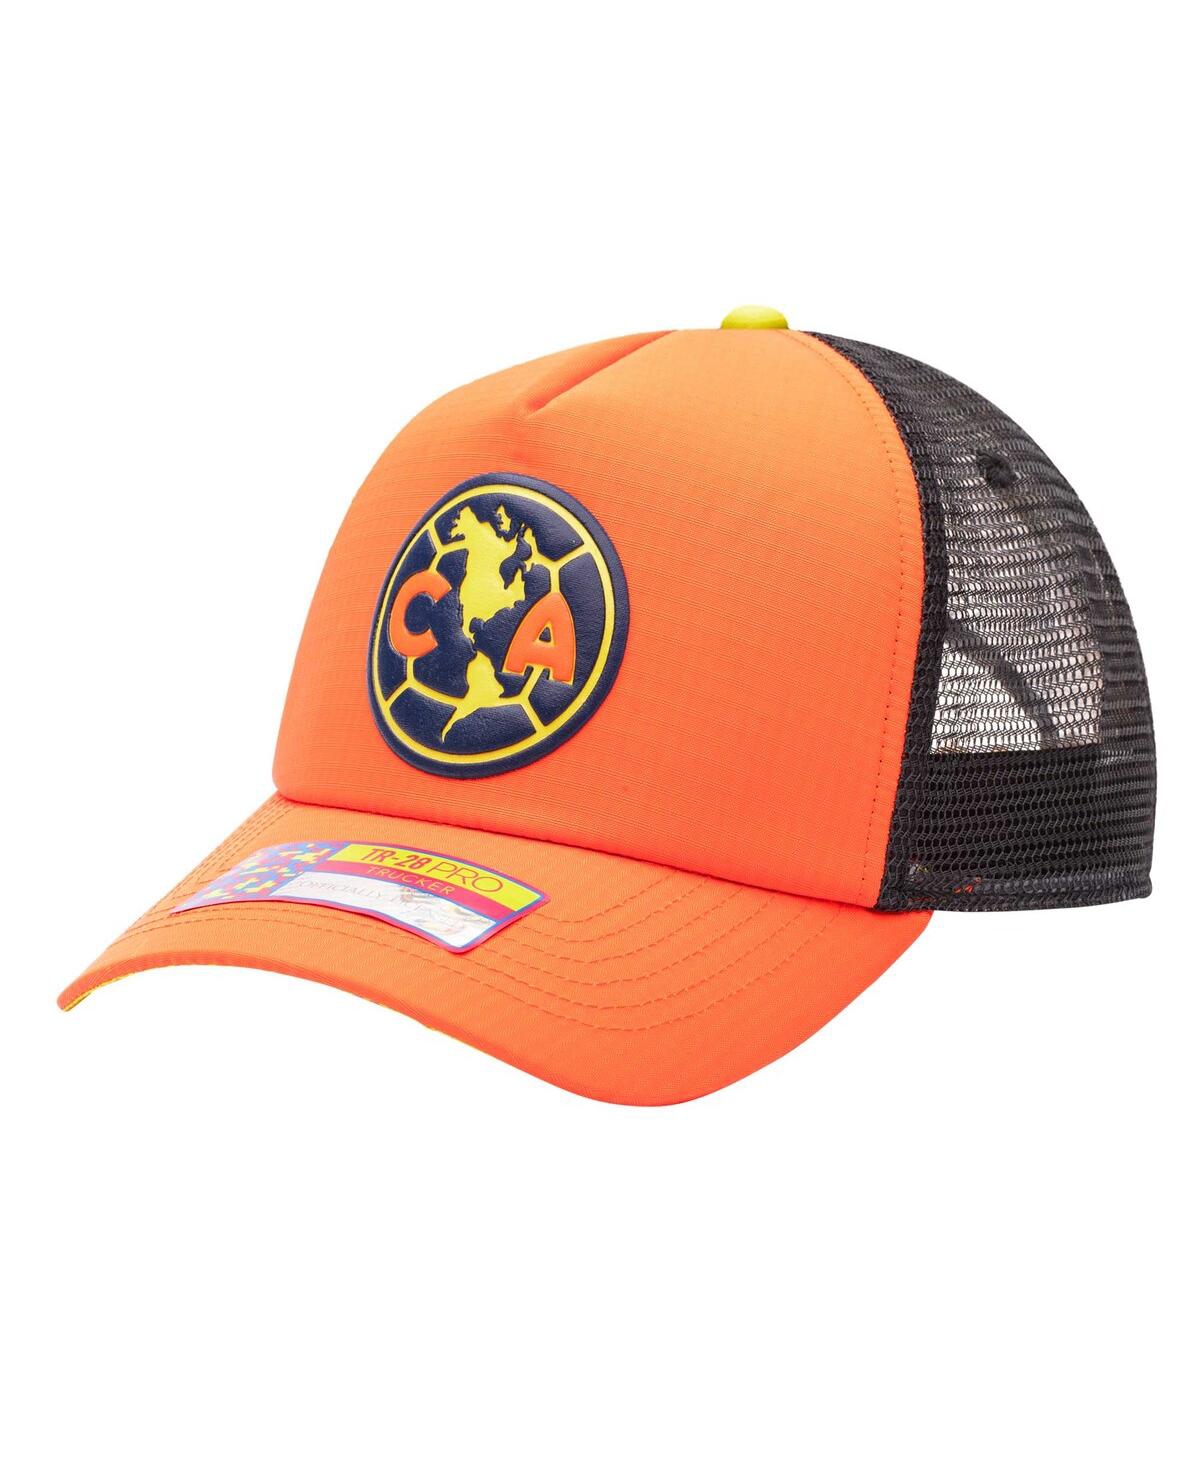 Fan Ink Men's Orange Club America Trucker Adjustable Hat